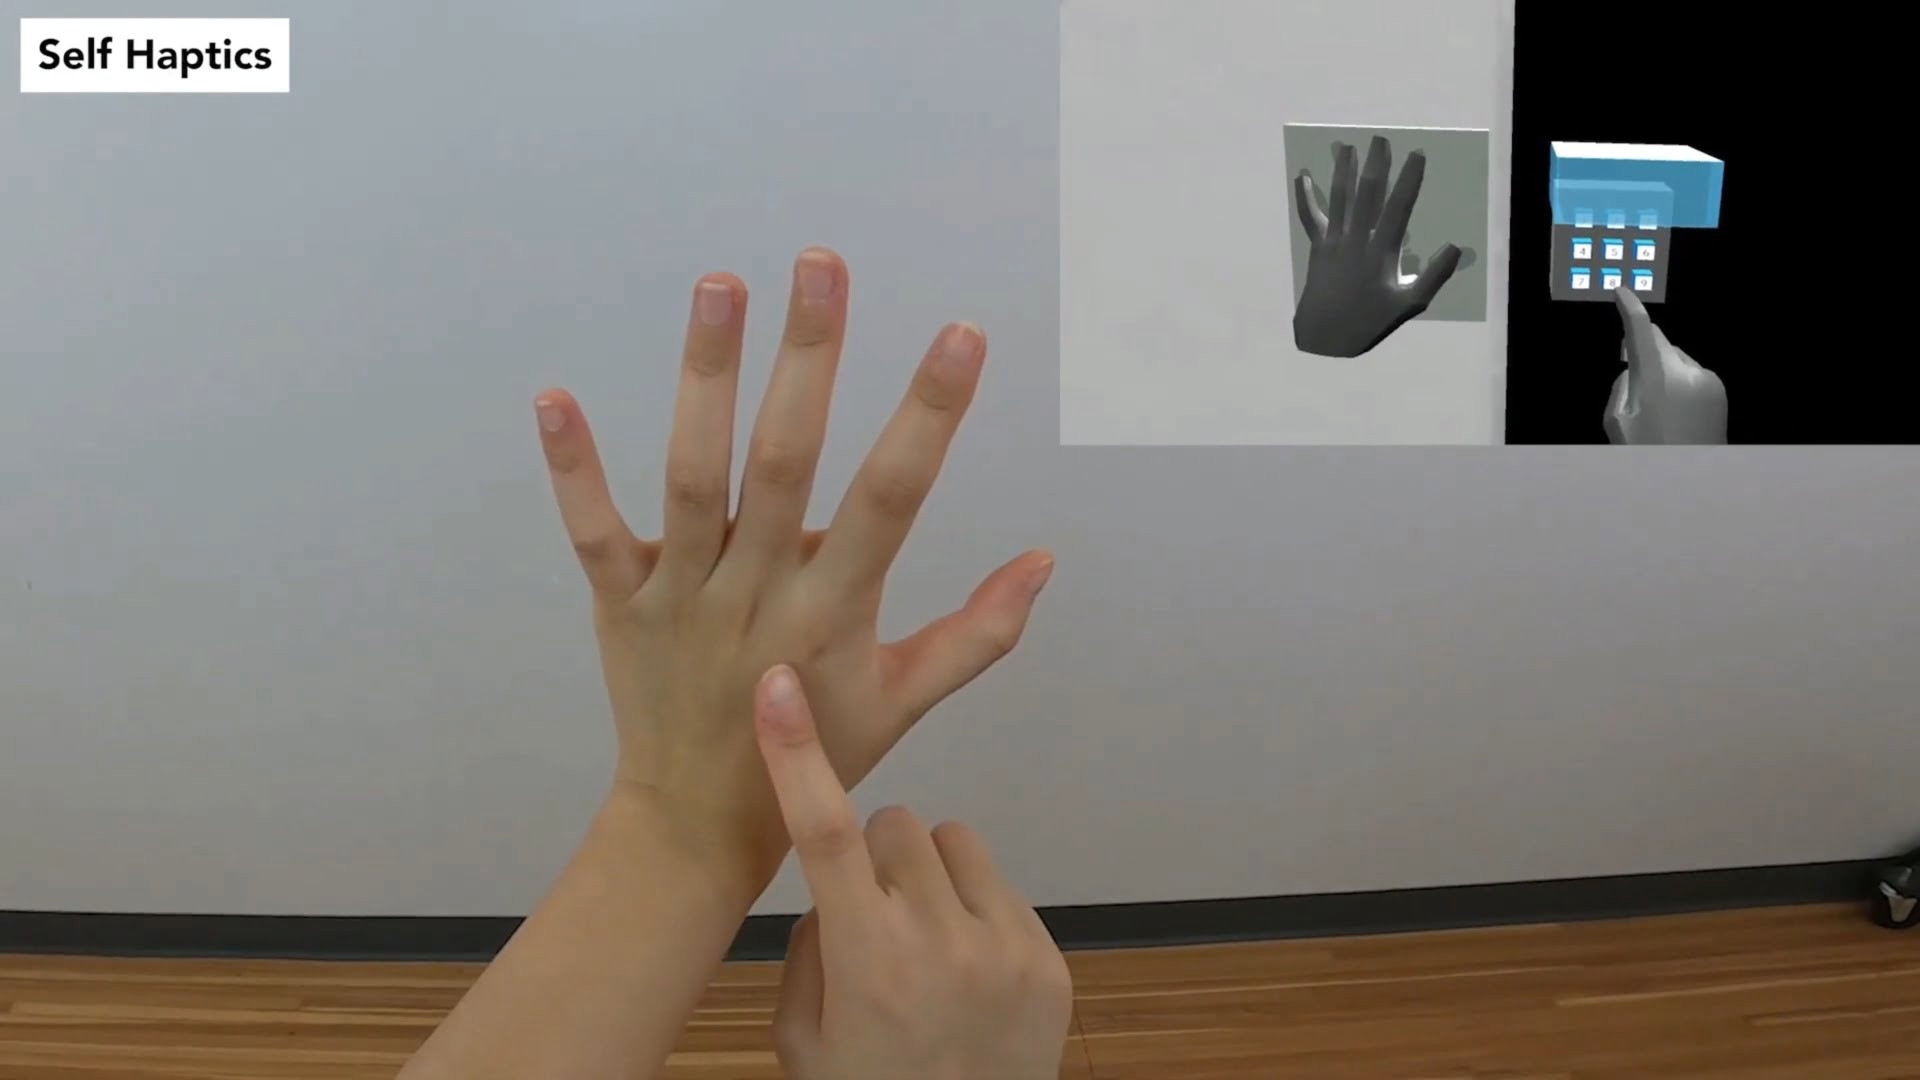 VR-Nutzer könnten sich für virtuelle Haptik selbst anfassen